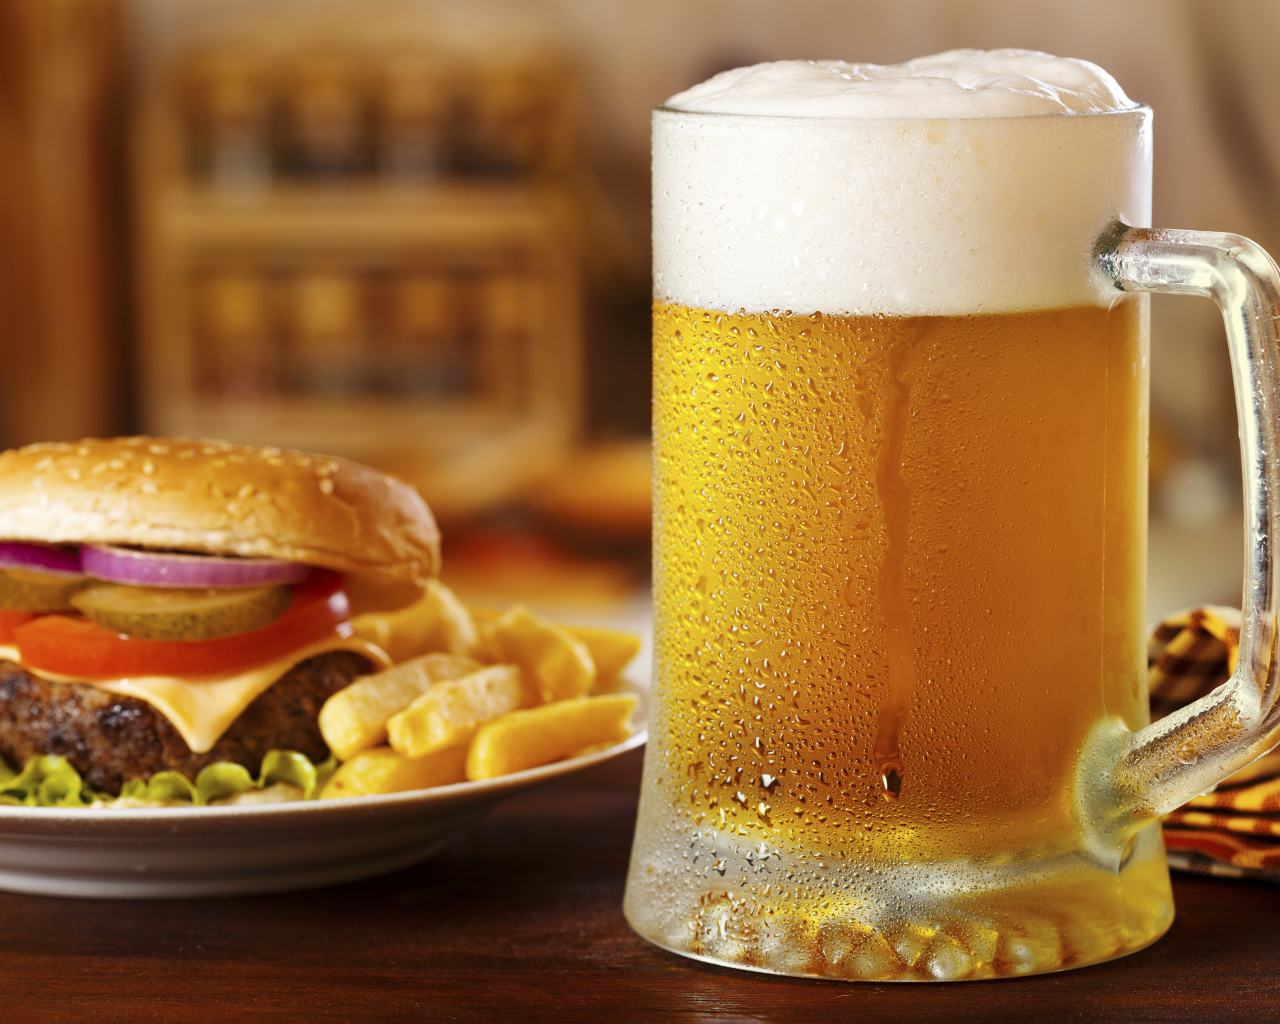 пиво, светлое, бутерброд, гамбургер, beer, light, choice, sandwich, hamburger, bar, room, wood, table, main, drink, room, read, bira, nice, wide